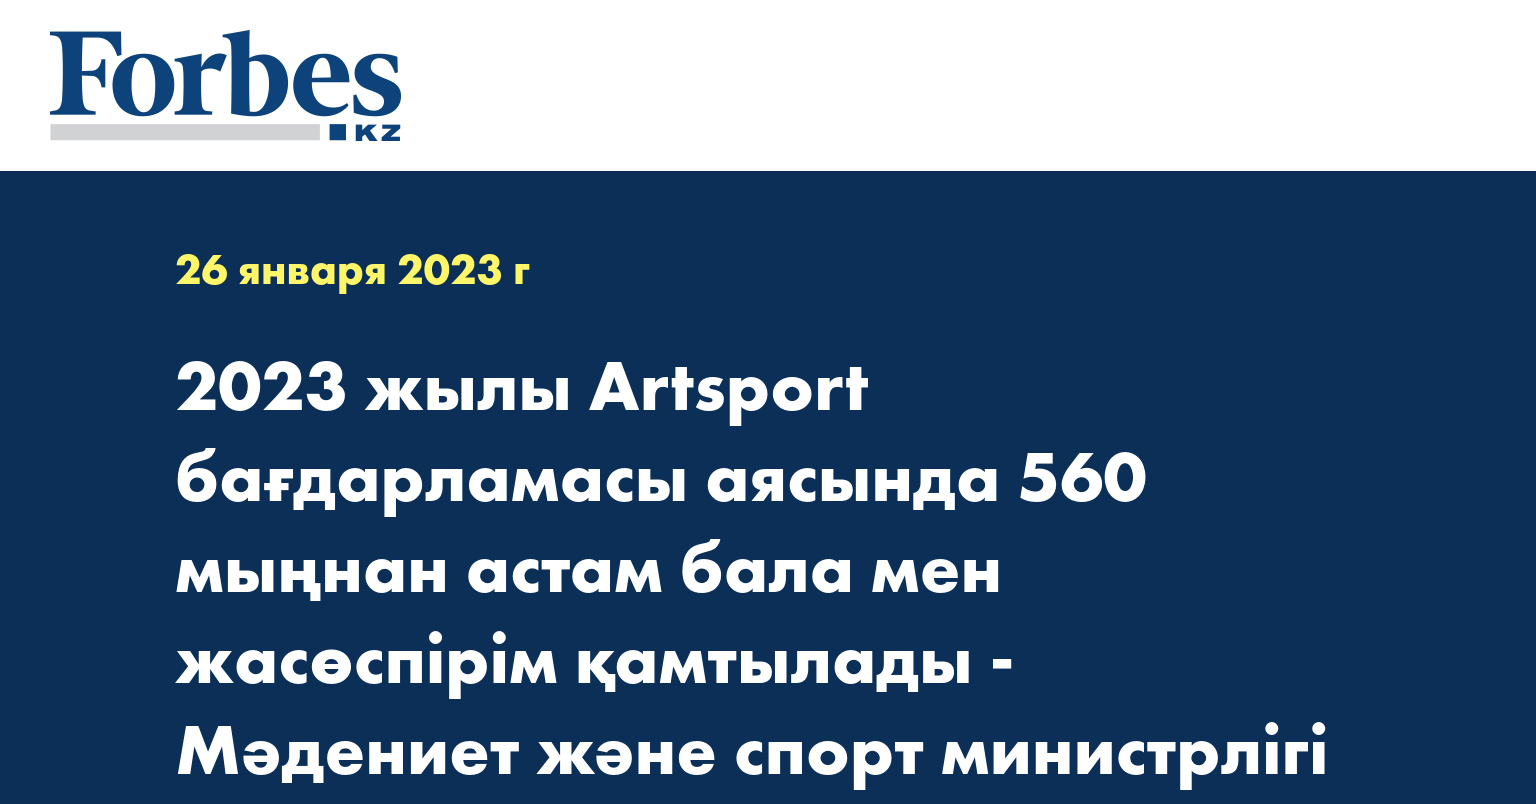 2023 жылы Artsport бағдарламасы аясында 560 мыңнан астам бала мен жасөспірім қамтылады - Мәдениет және спорт министрлігі